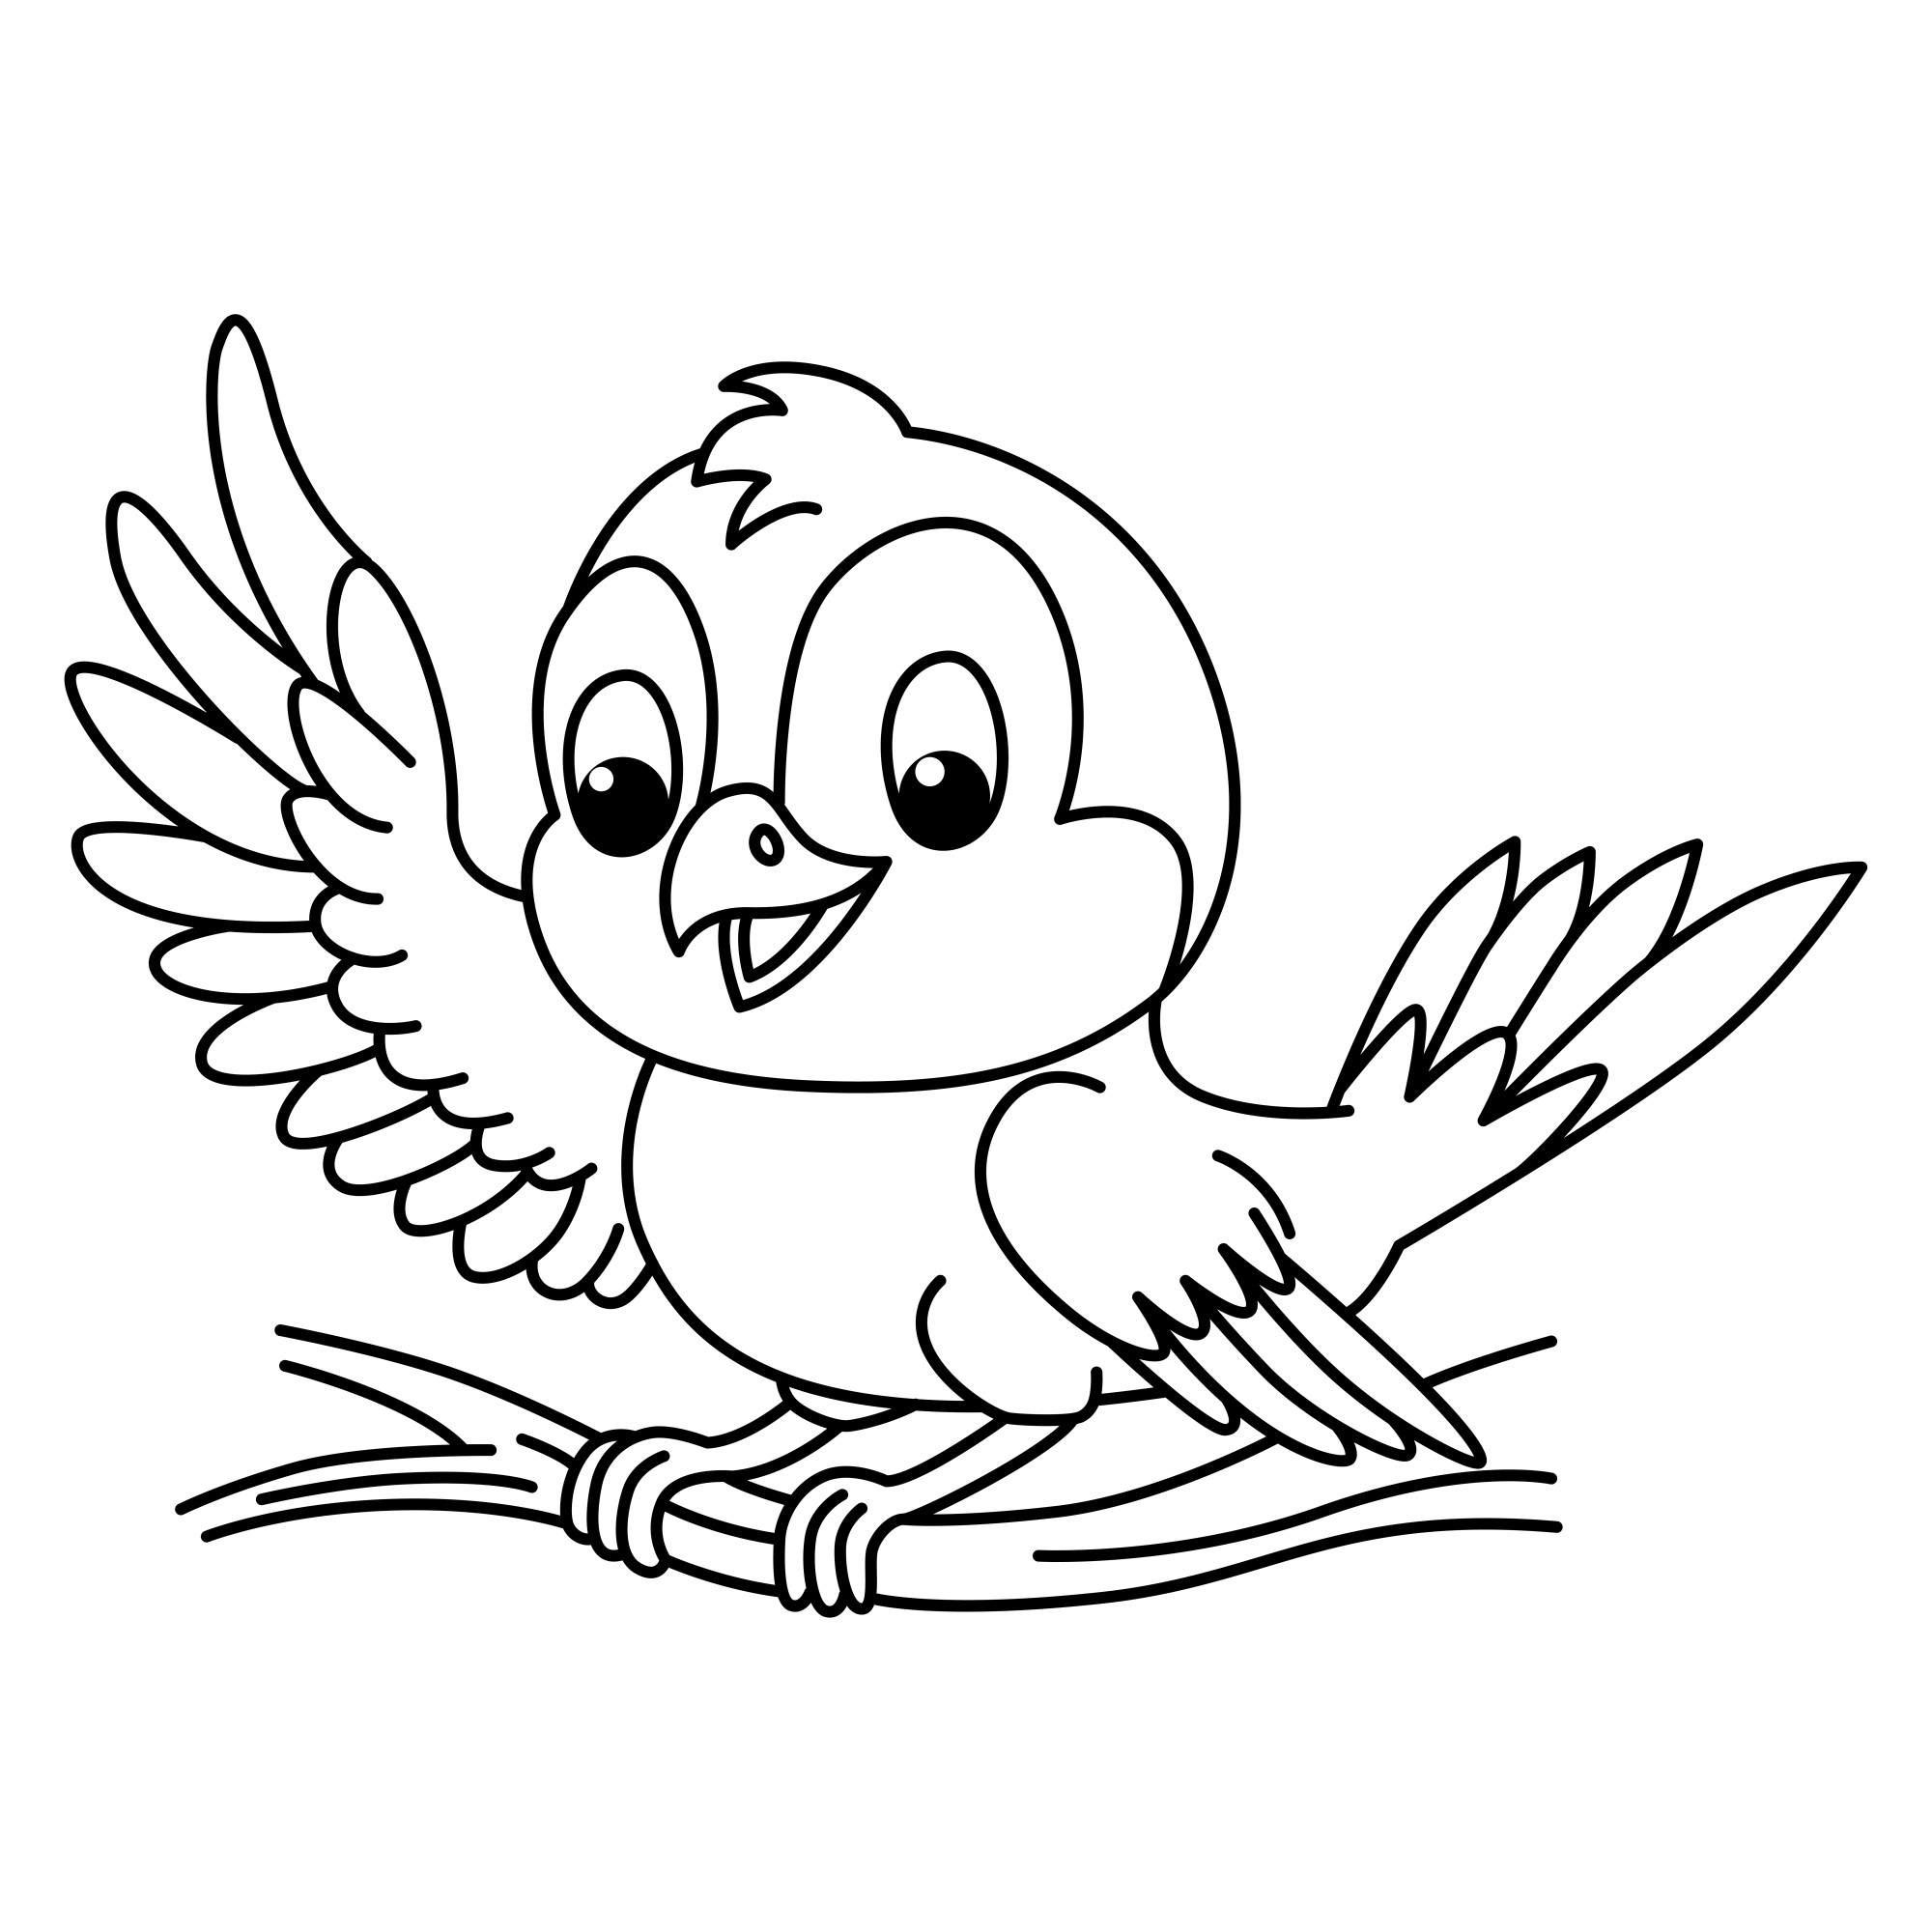 Раскраска для детей: птичка на веточке машет крылом и улыбается